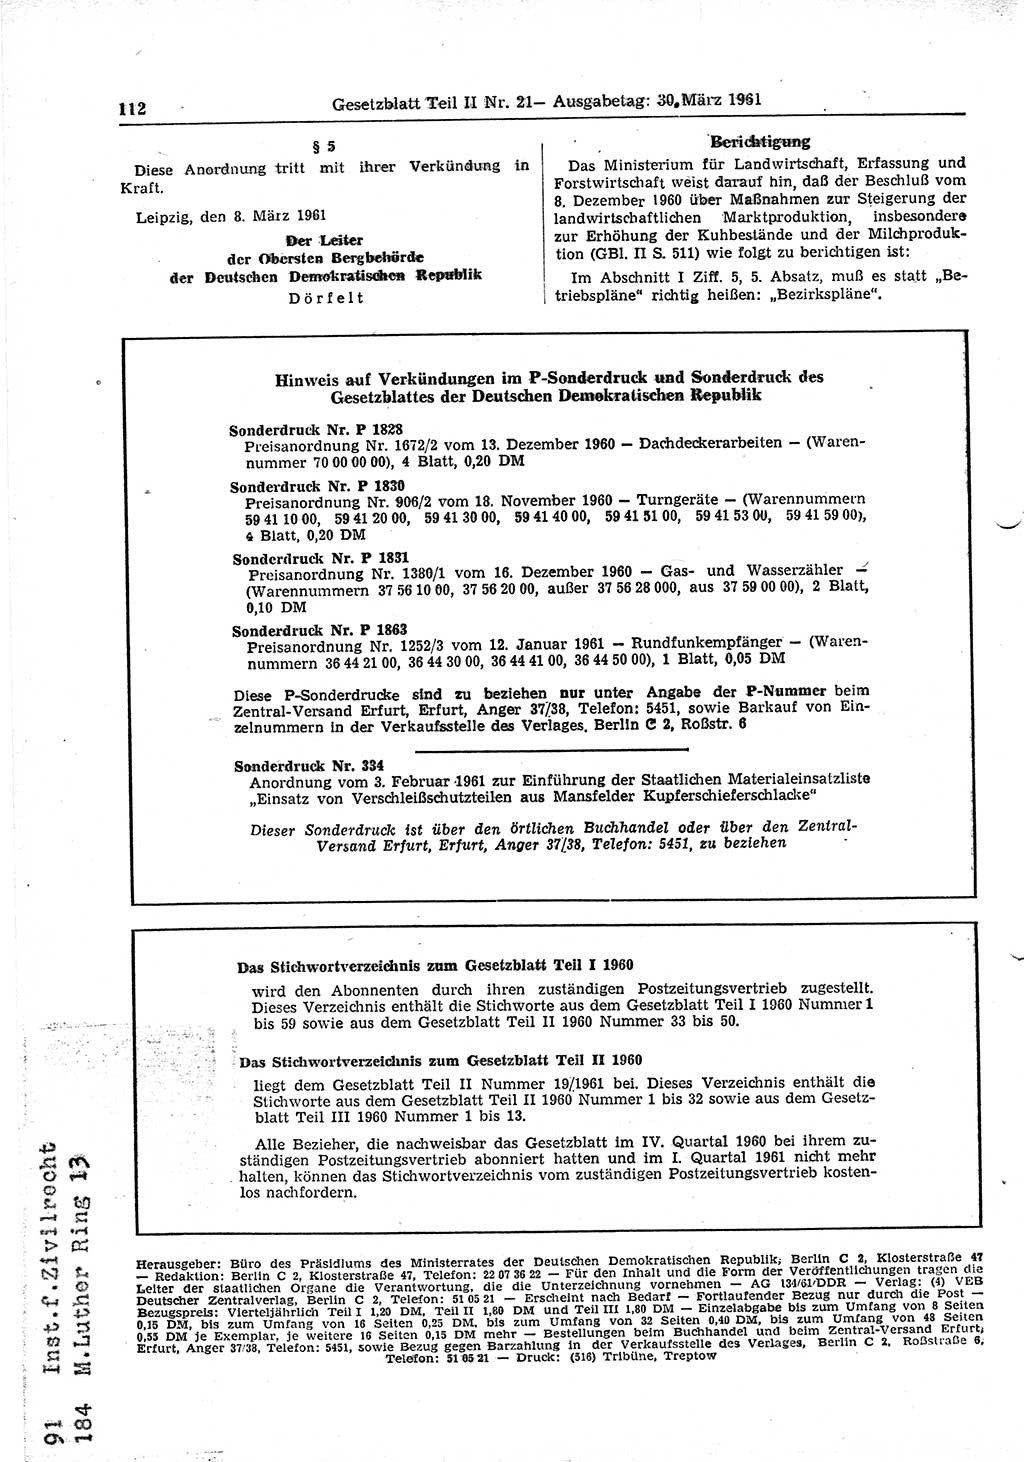 Gesetzblatt (GBl.) der Deutschen Demokratischen Republik (DDR) Teil ⅠⅠ 1961, Seite 112 (GBl. DDR ⅠⅠ 1961, S. 112)